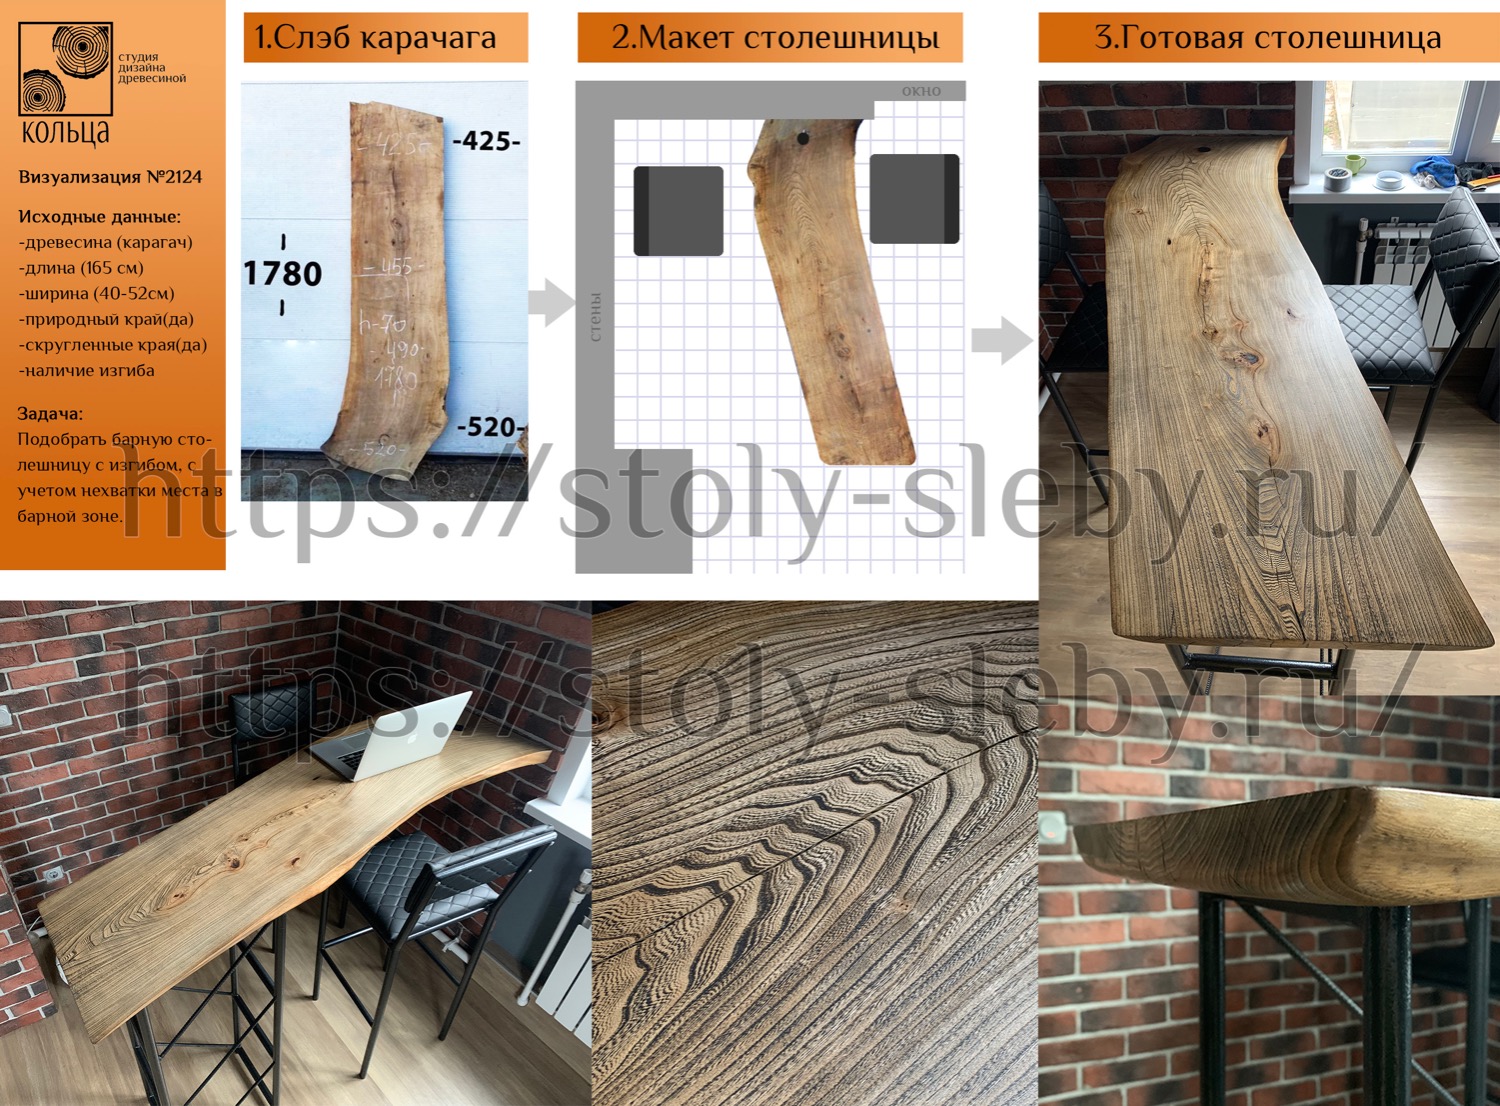 Инфографика: этапы разработки барной столешницы с изгибом из слэба карагача и подстольем - от студии Кольца